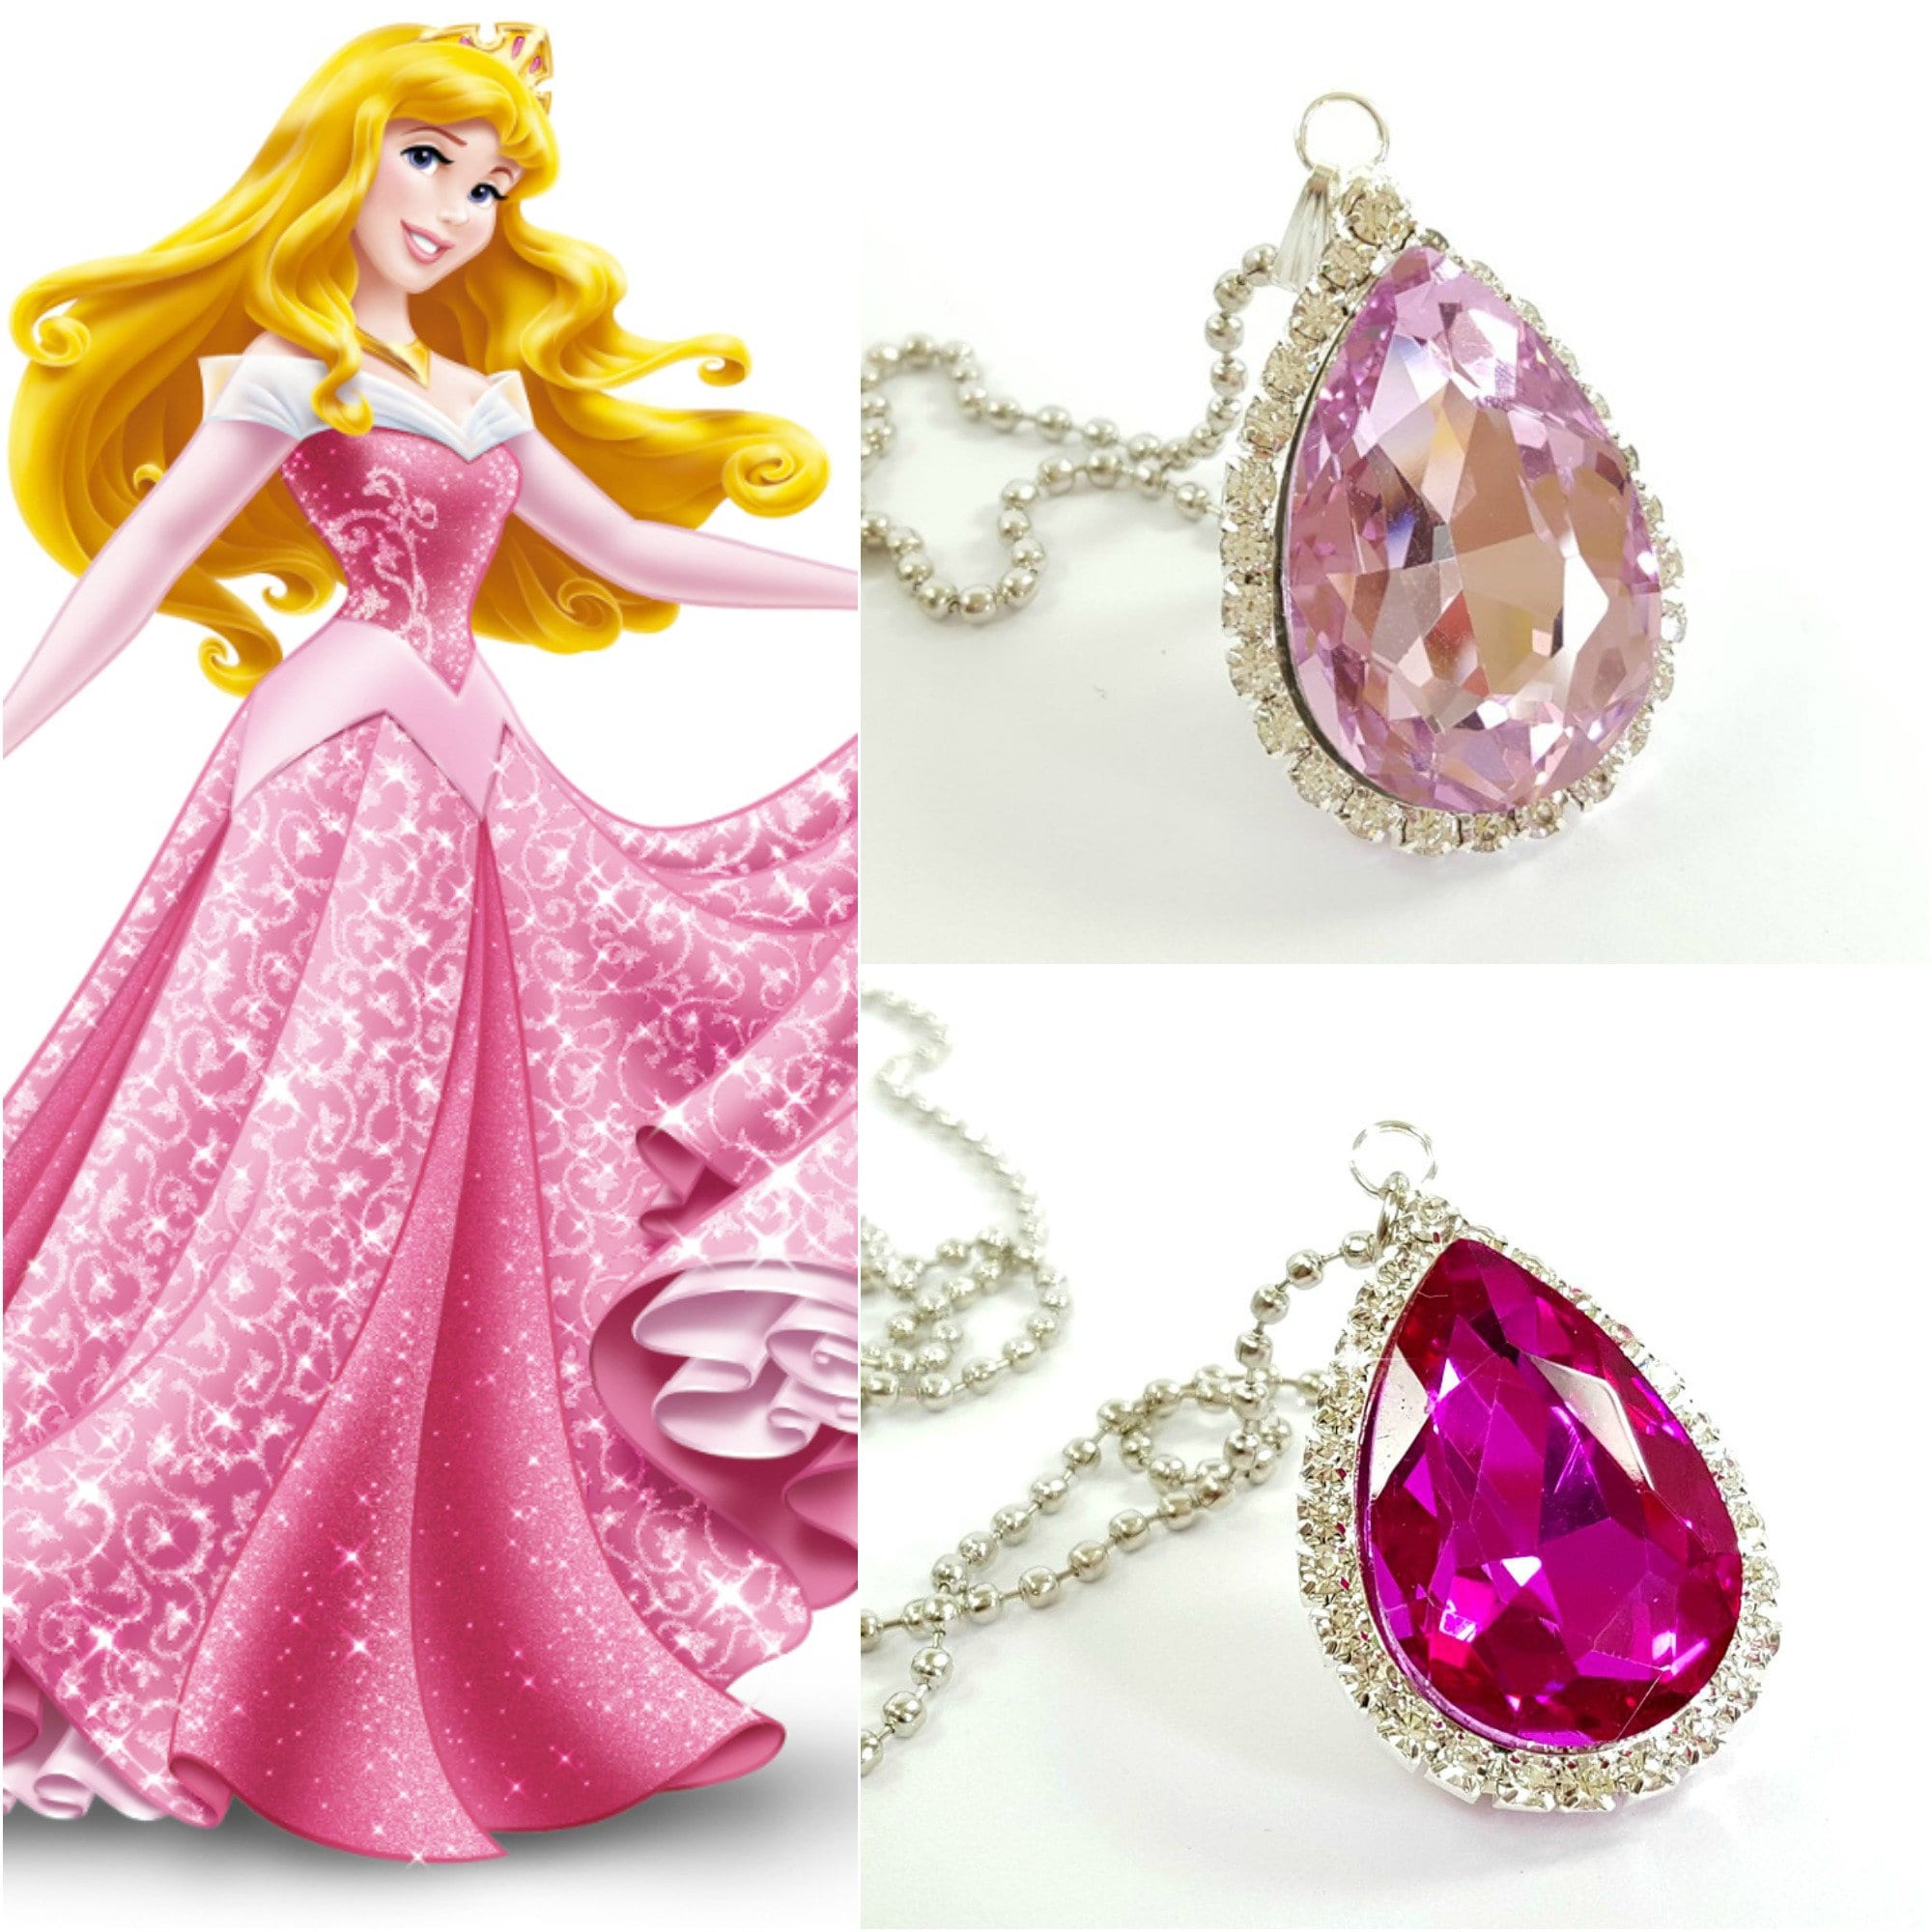 Disney Princess - Aurora~ | Disney princess dresses, Disney princess aurora,  Princess aurora